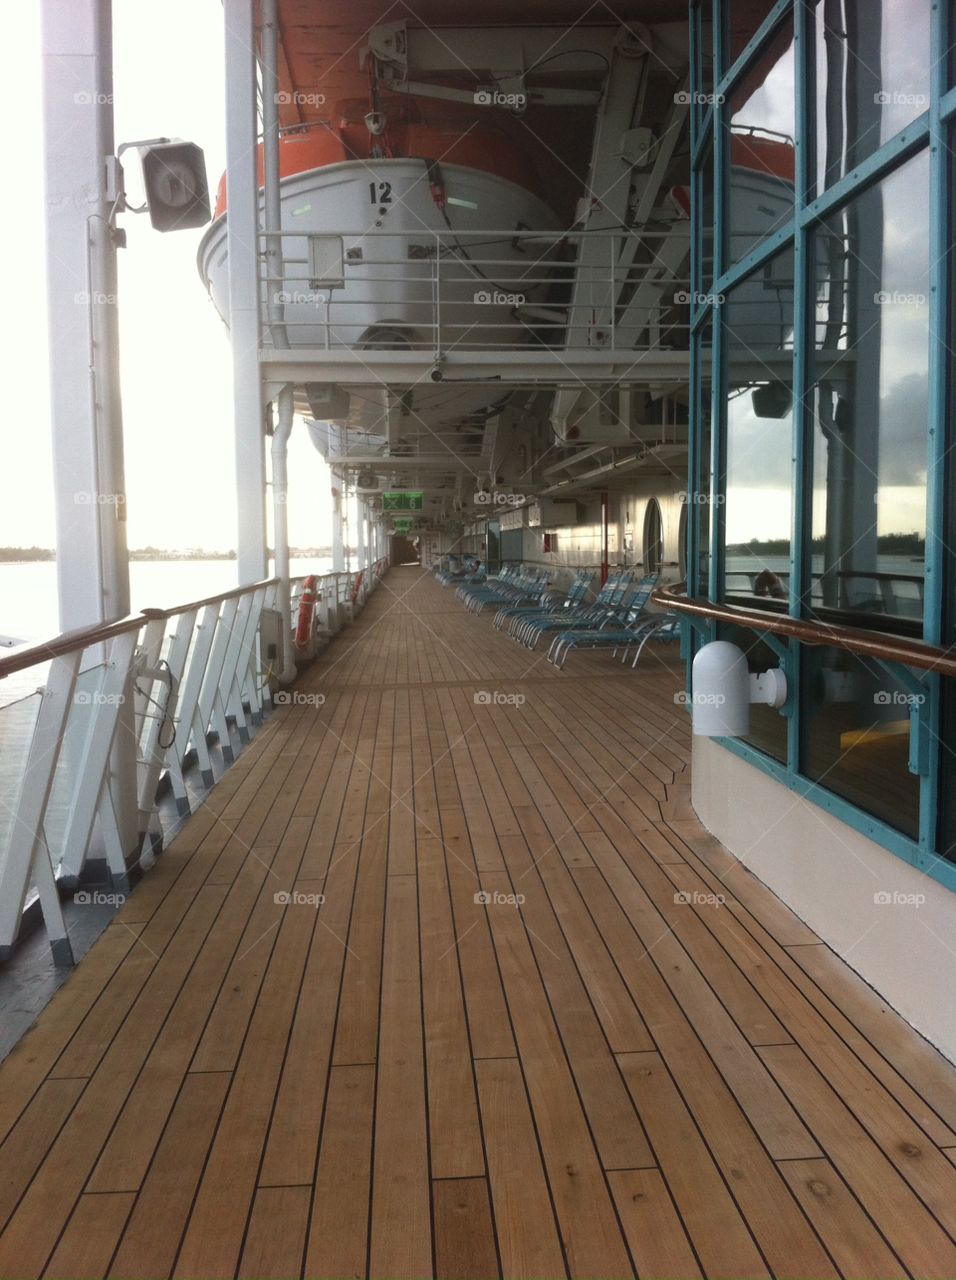 Promenade Deck. Took this onboard the Grandeur of the Seas last year